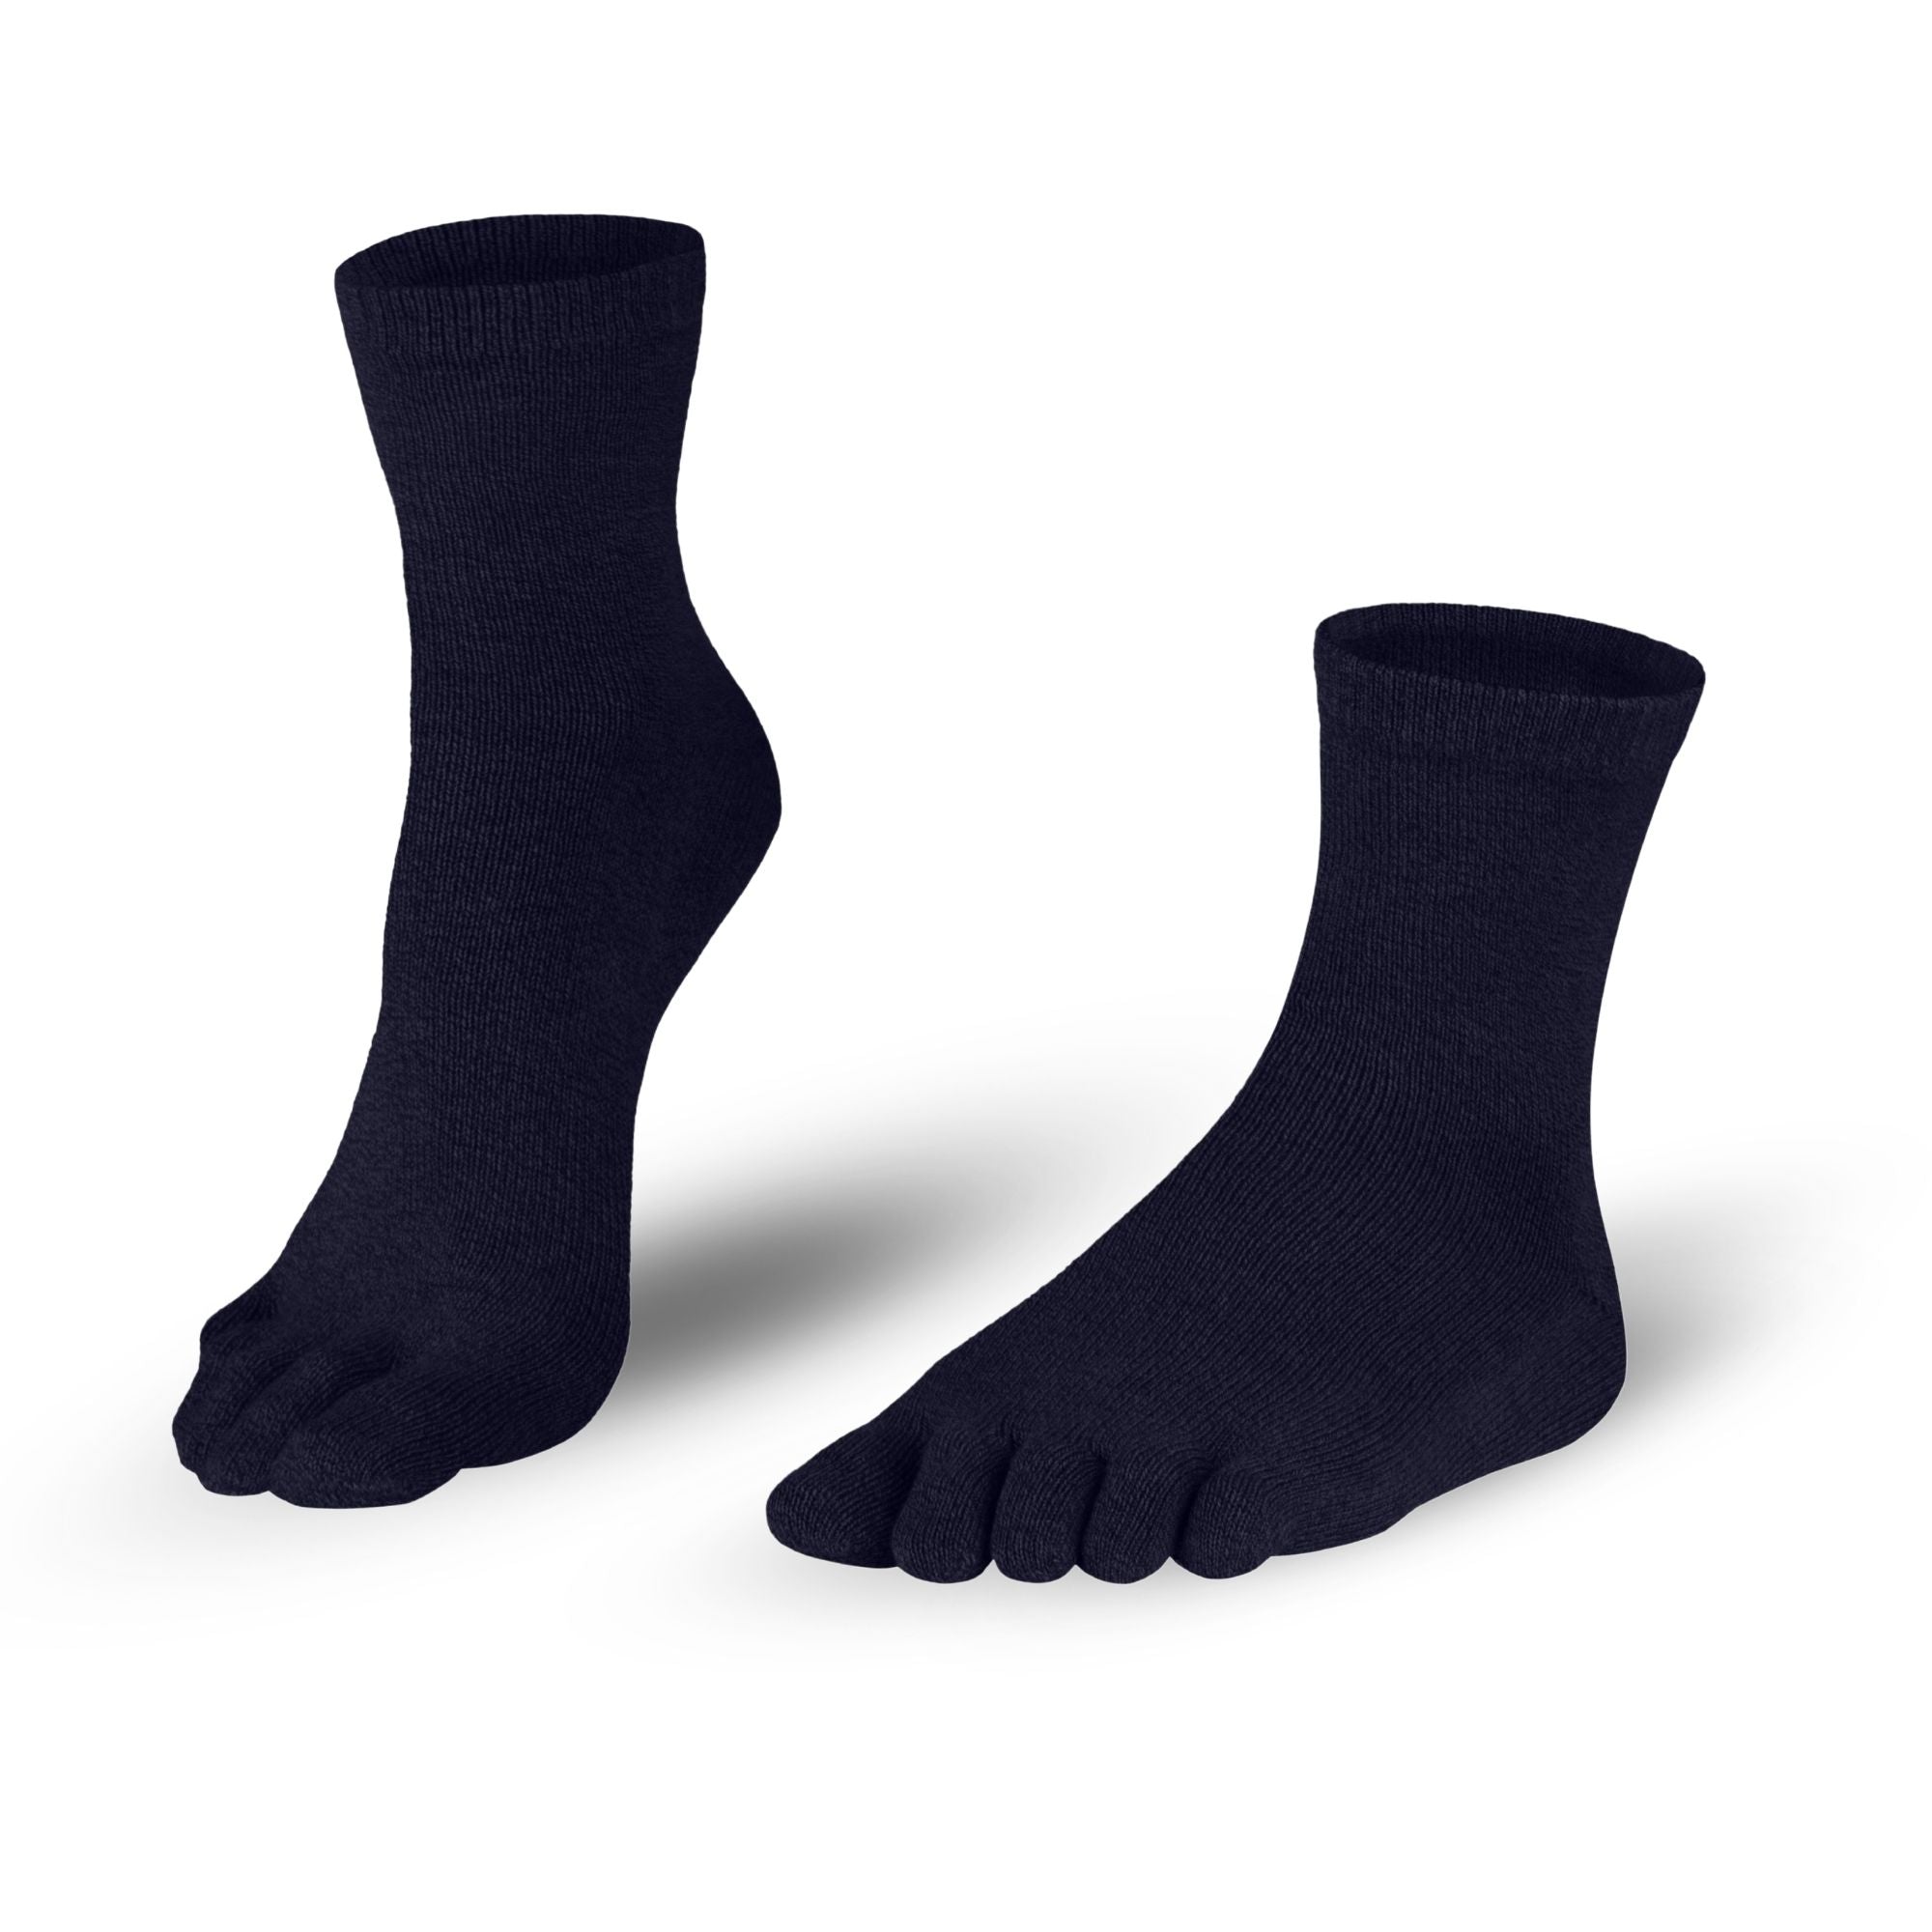 Cotton toe socks socks in navy blue for men and women